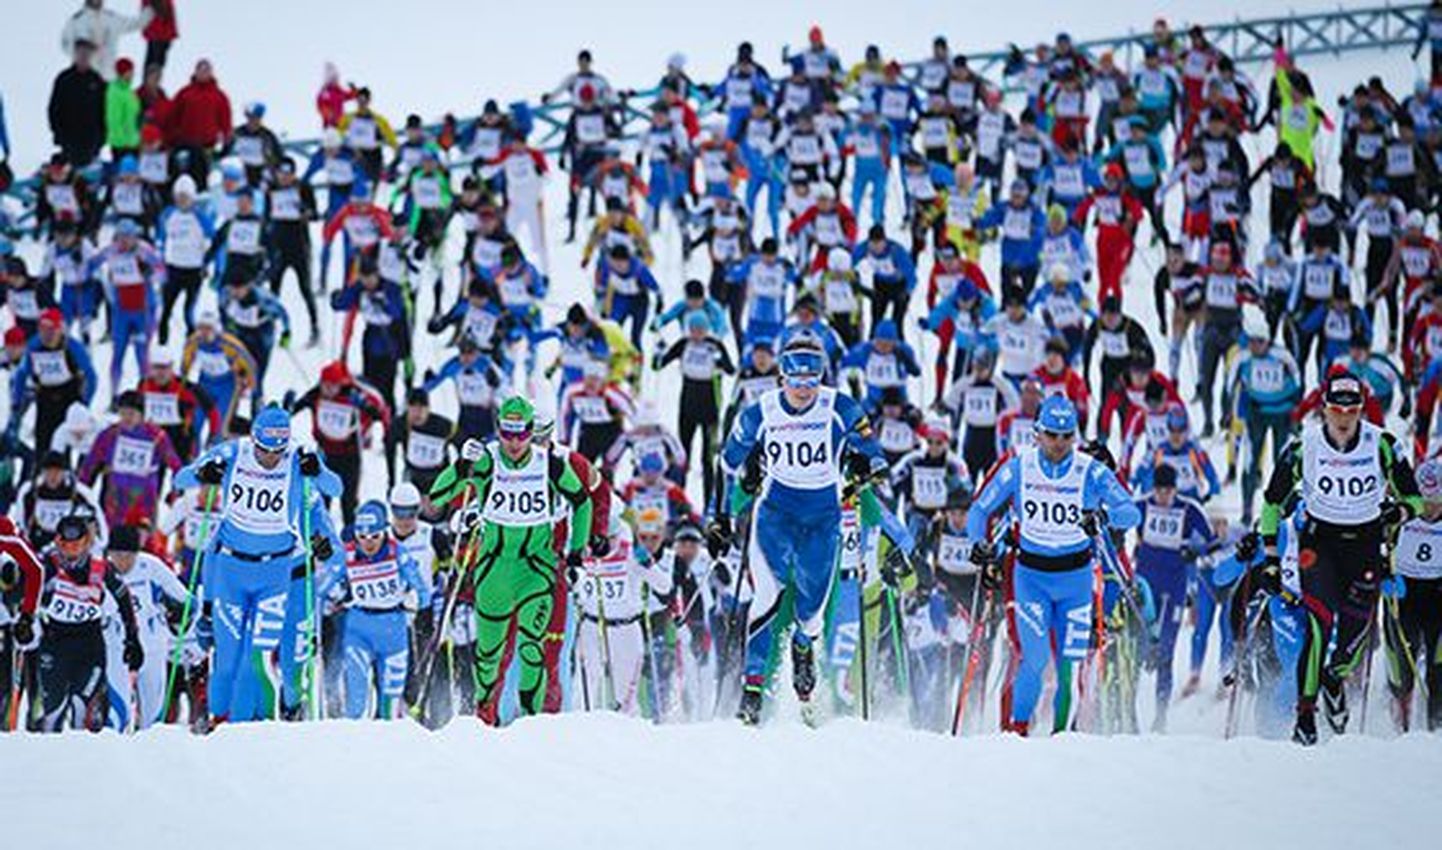 Soome 100 ametlikku programmi kuuluv traditsiooniline suusamaraton toimub sel aastal 4.-5. veebruaril.